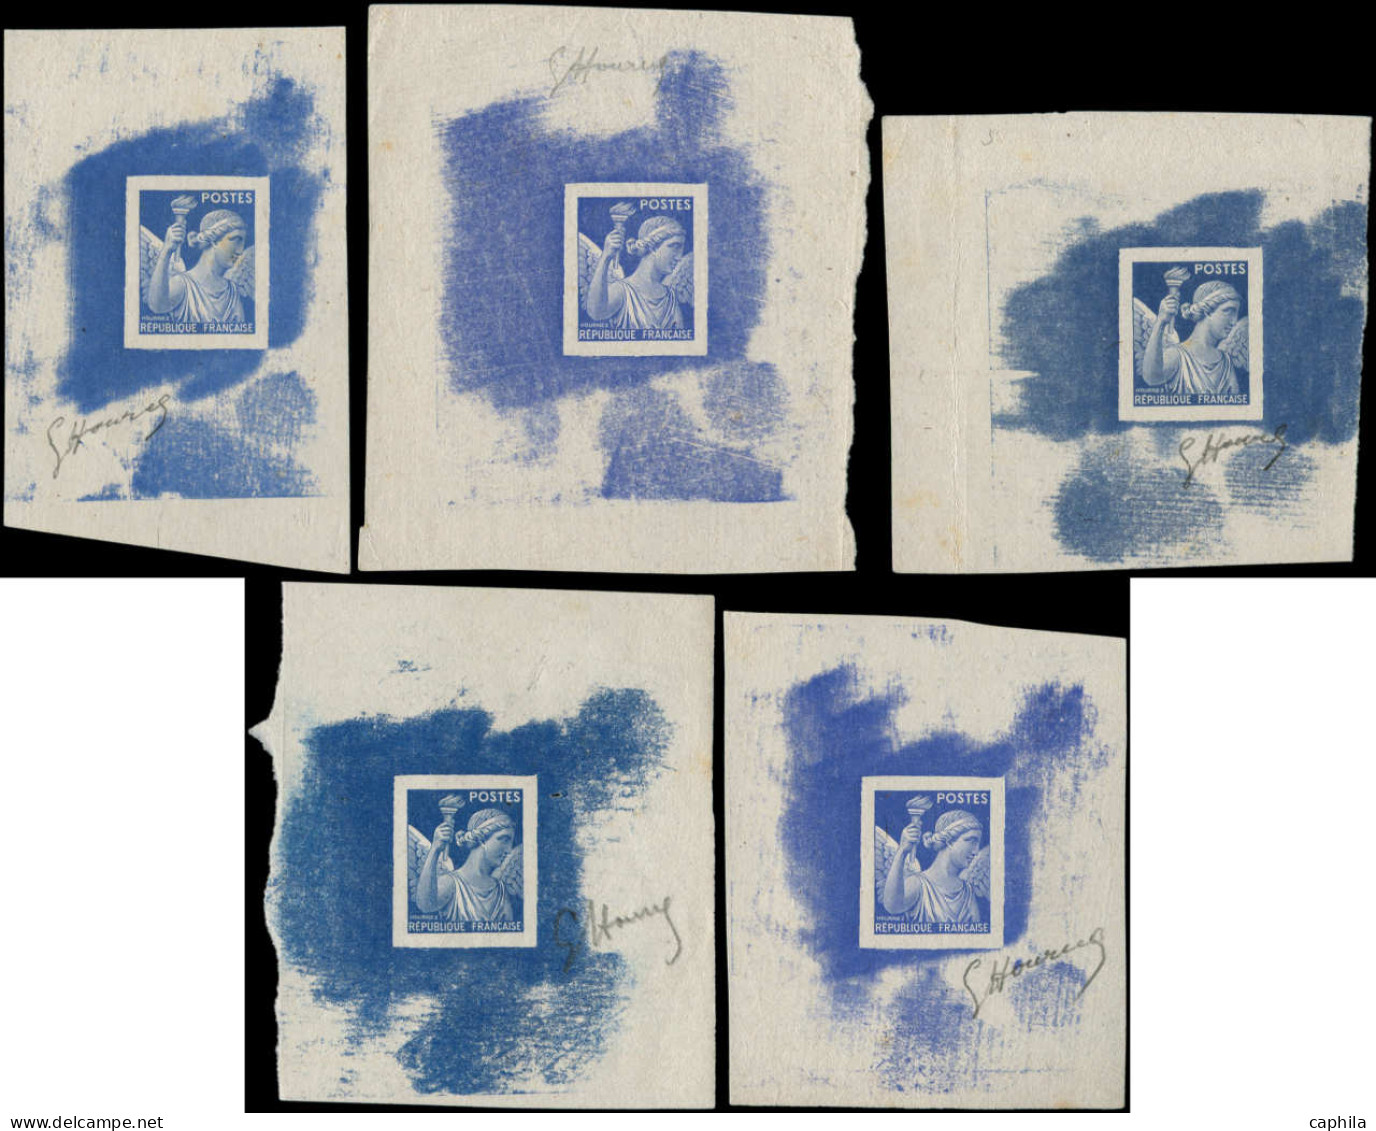 FRANCE Epreuves D'Artiste EPA - (431), Gravure Fine, Série De 5 épreuves Du Poinçon Sans Faciale Dans 5 Teintes De Bleu  - Epreuves D'artistes